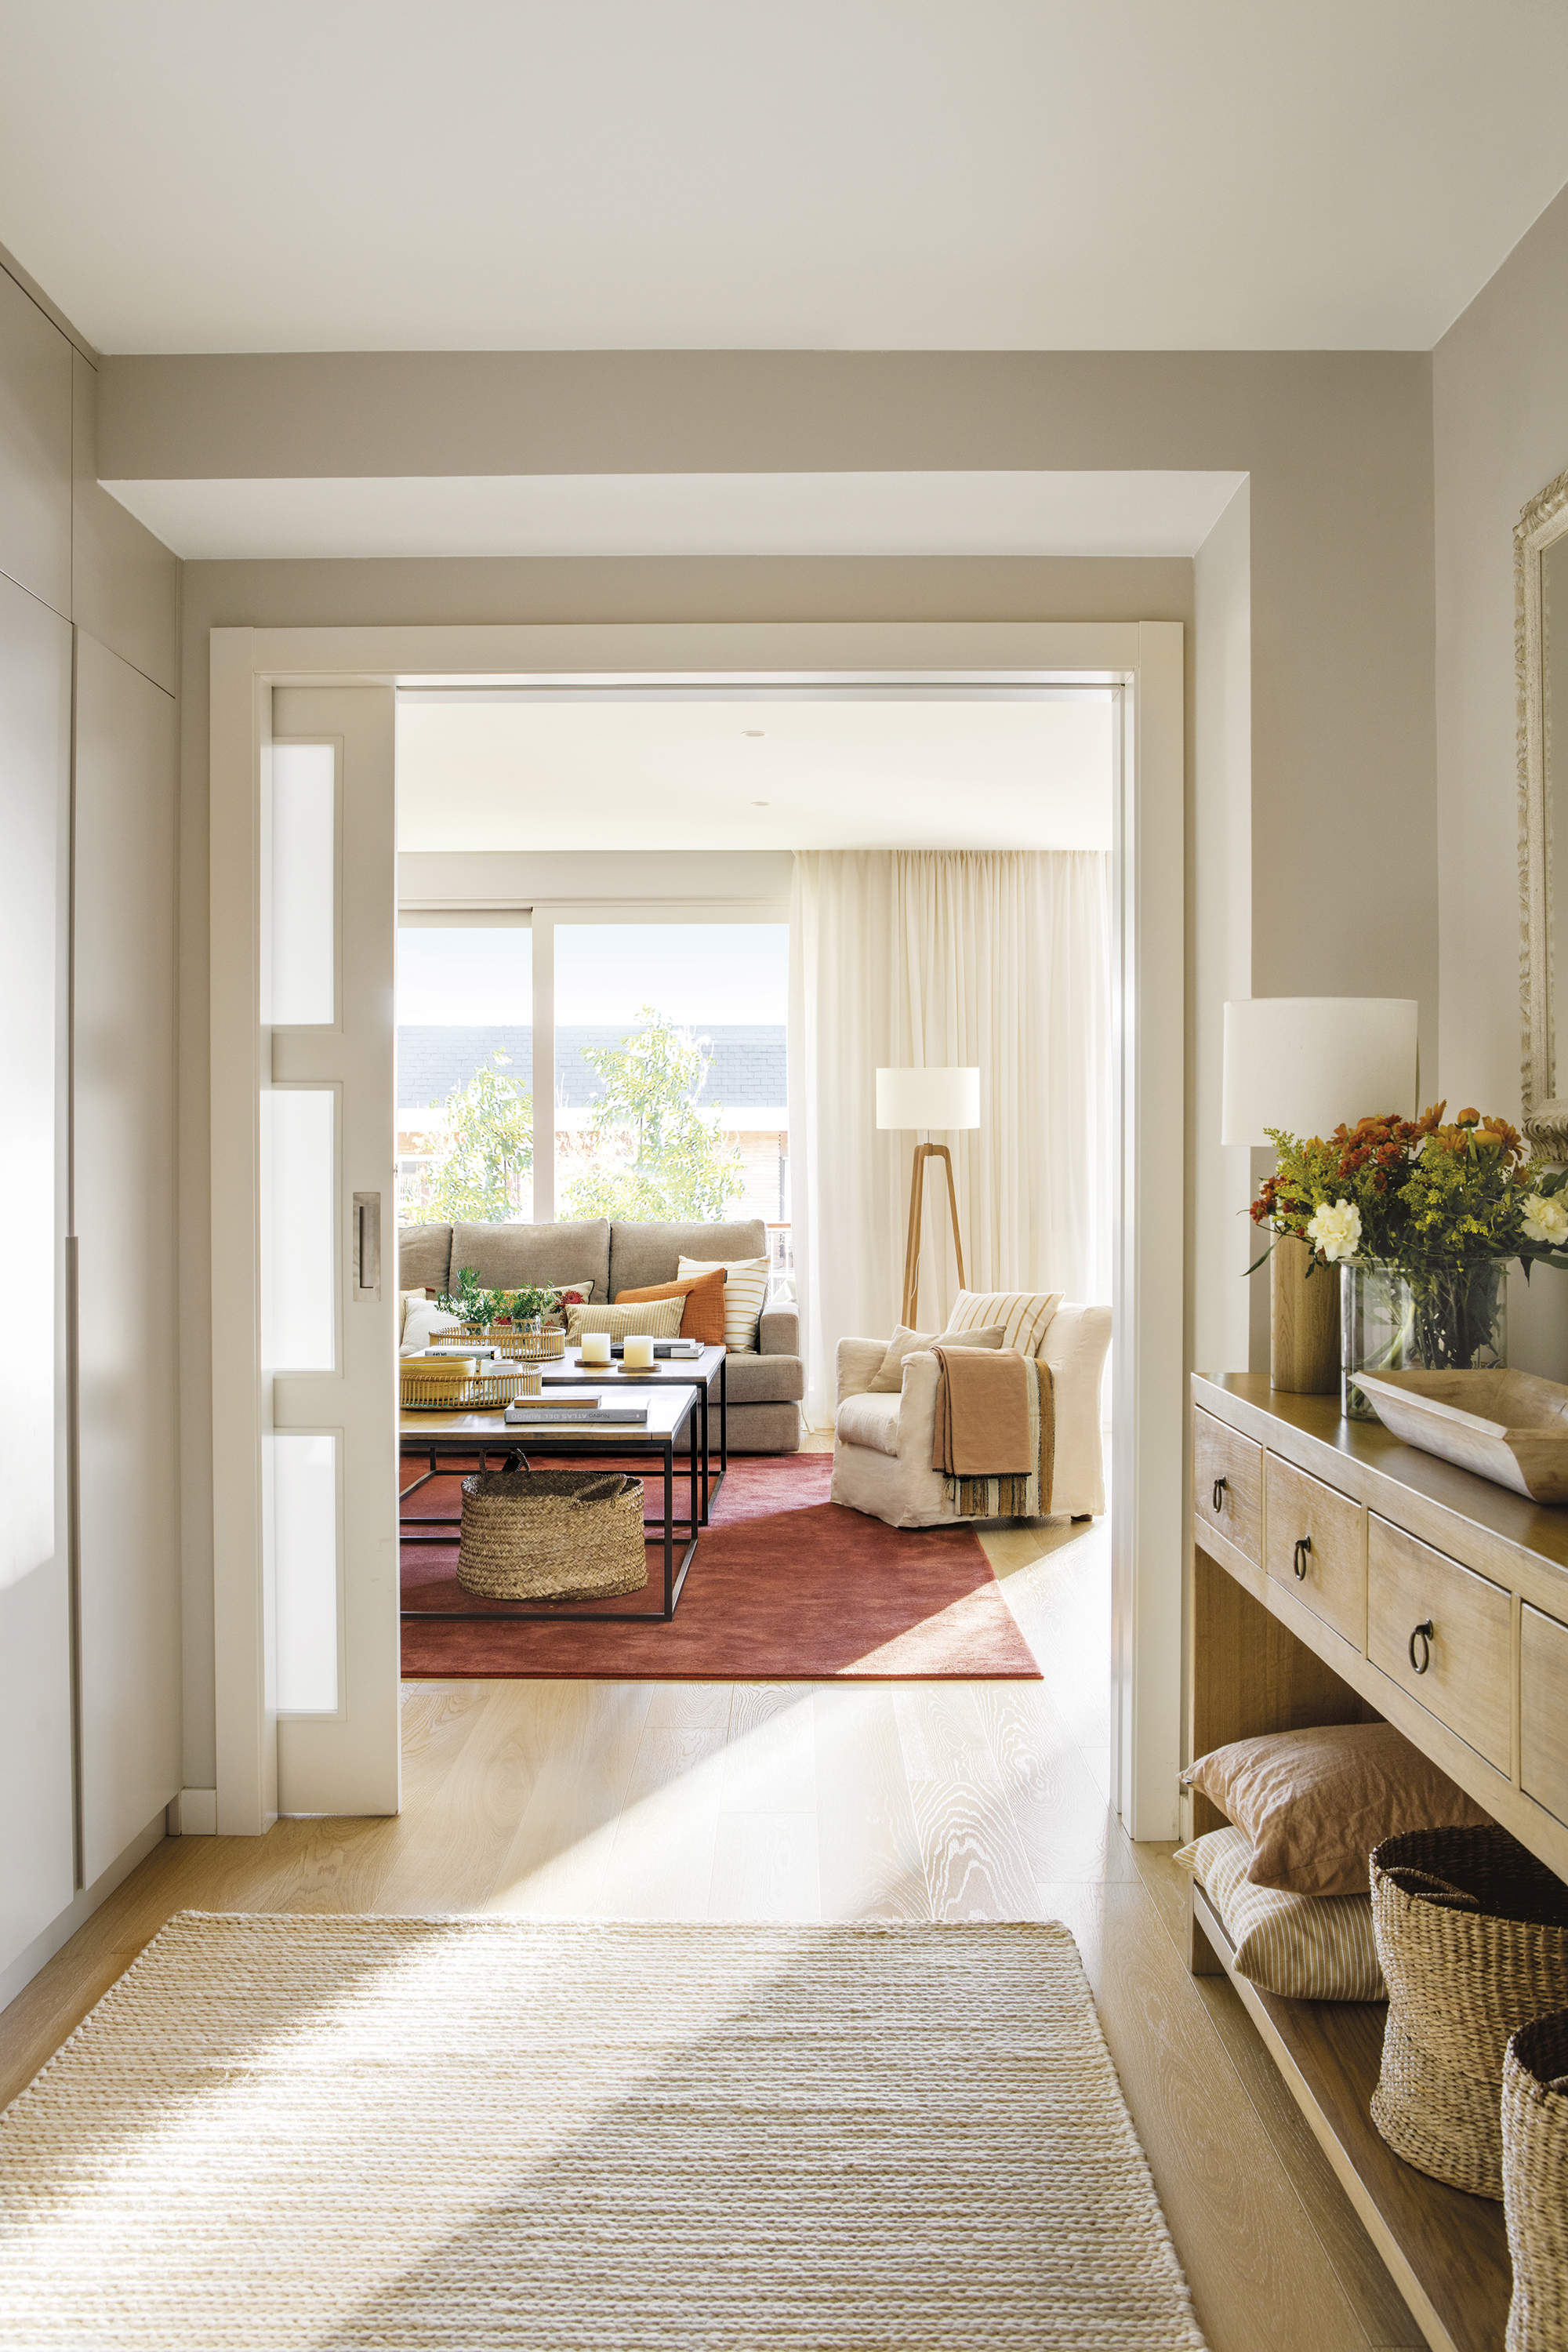 recibidor con mueble de madera y armario a medida, puerta corredera con salón al fondo con alfombra color morado